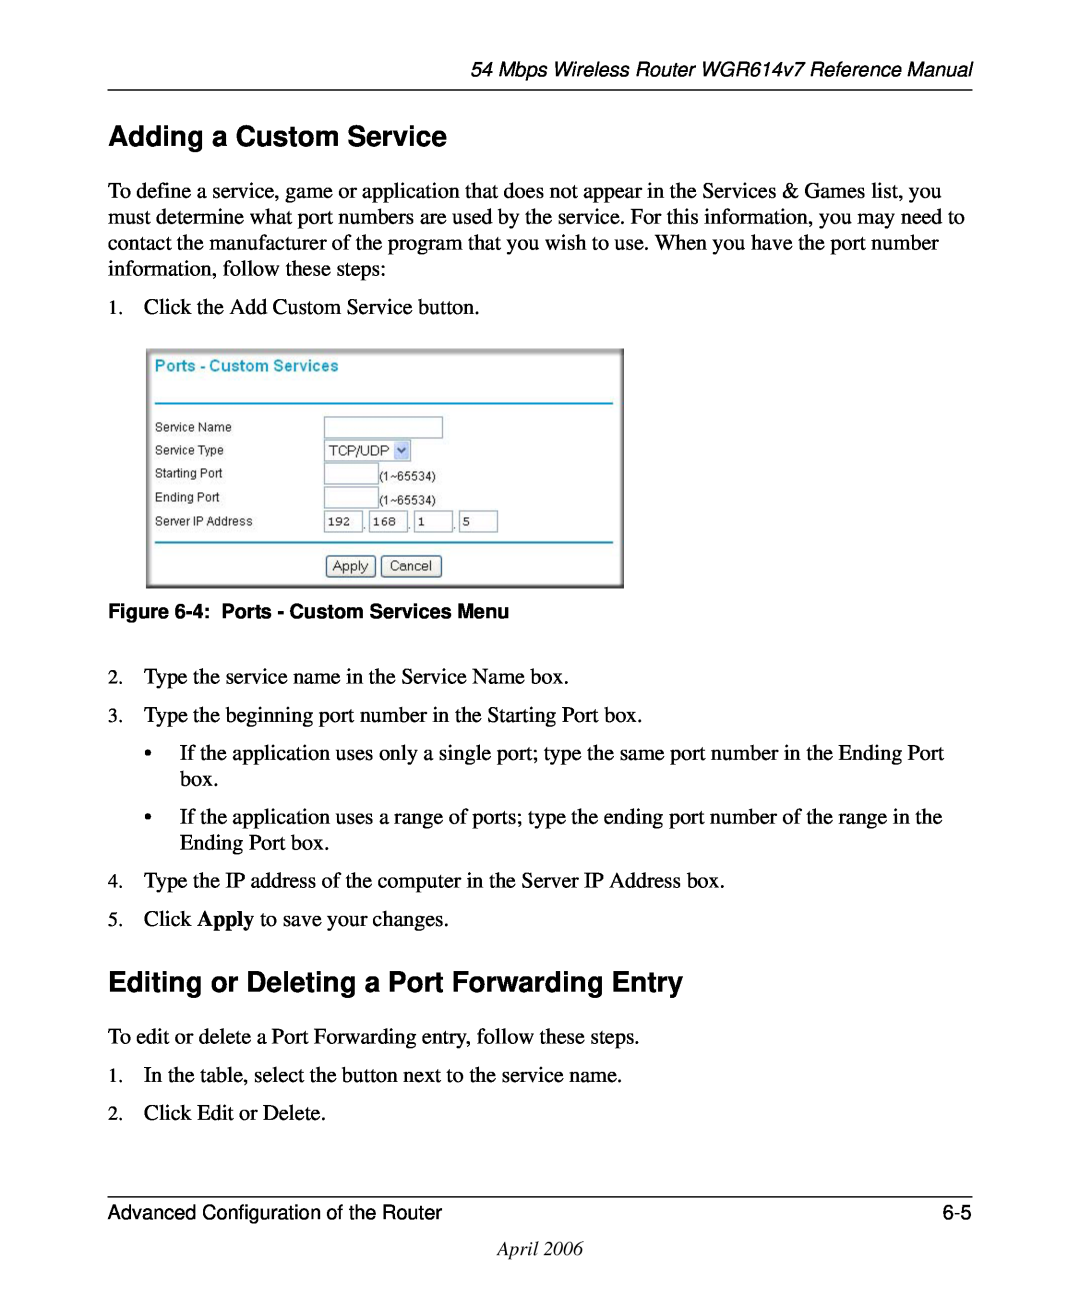 NETGEAR WGR614v7 manual Adding a Custom Service, Editing or Deleting a Port Forwarding Entry 